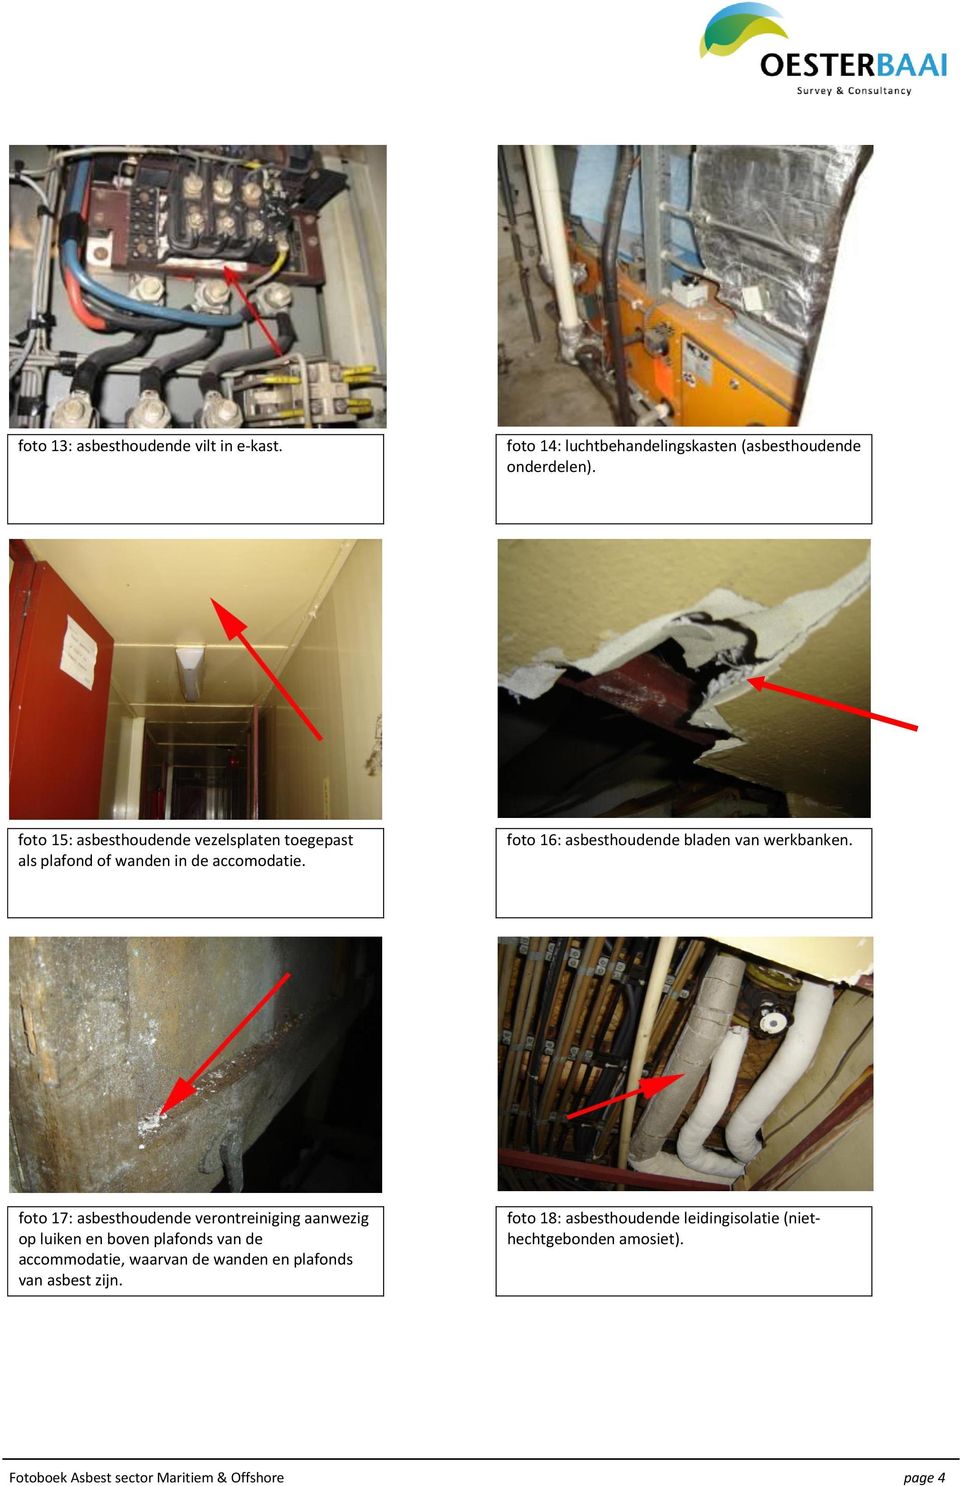 foto 16: asbesthoudende bladen van werkbanken.